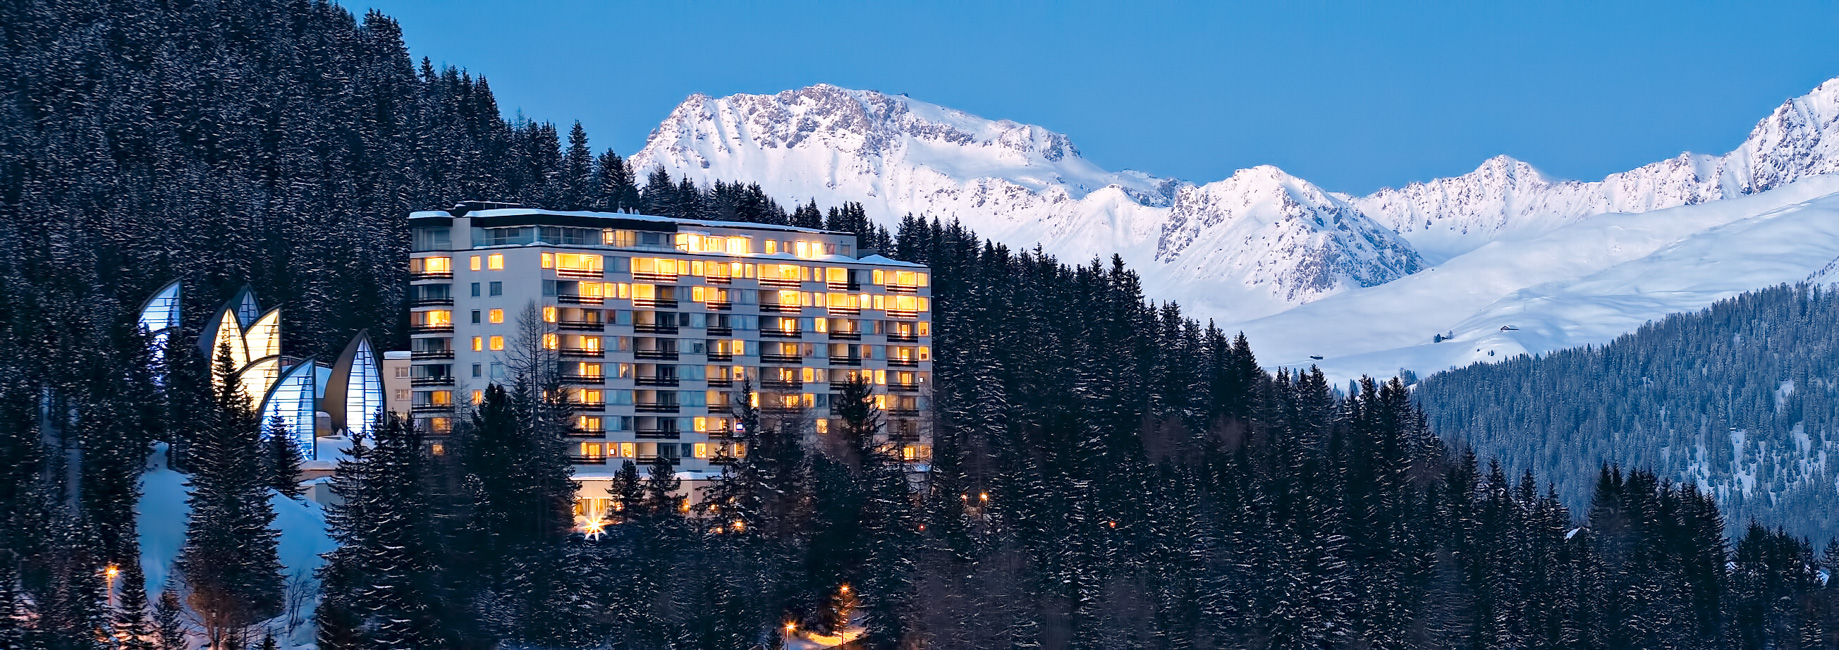 Tschuggen Grand Hotel – Arosa, Switzerland – Winter Wonderland